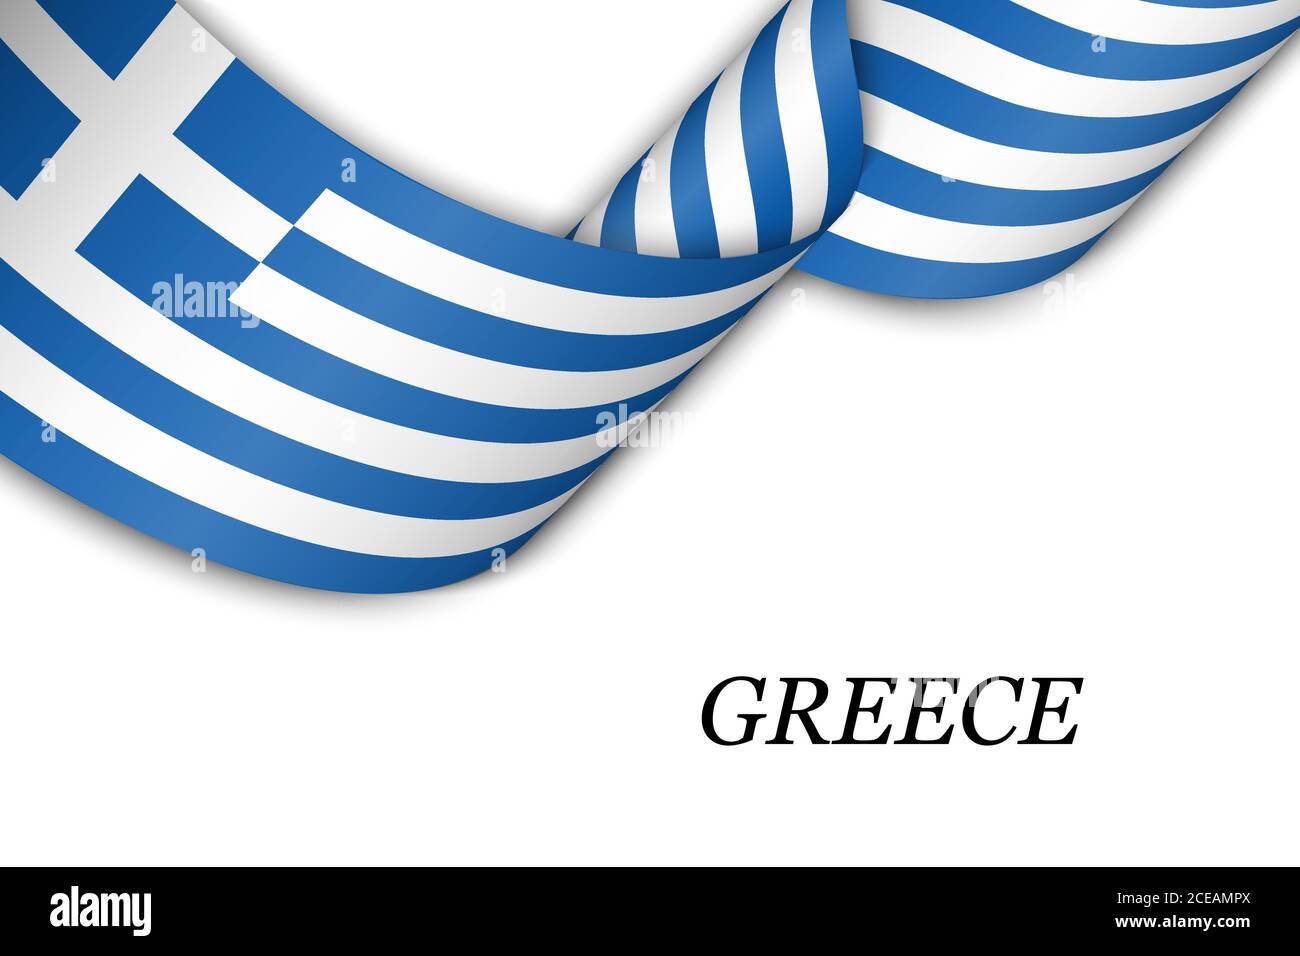 Griechische flagge Stock-Vektorgrafiken kaufen - Alamy